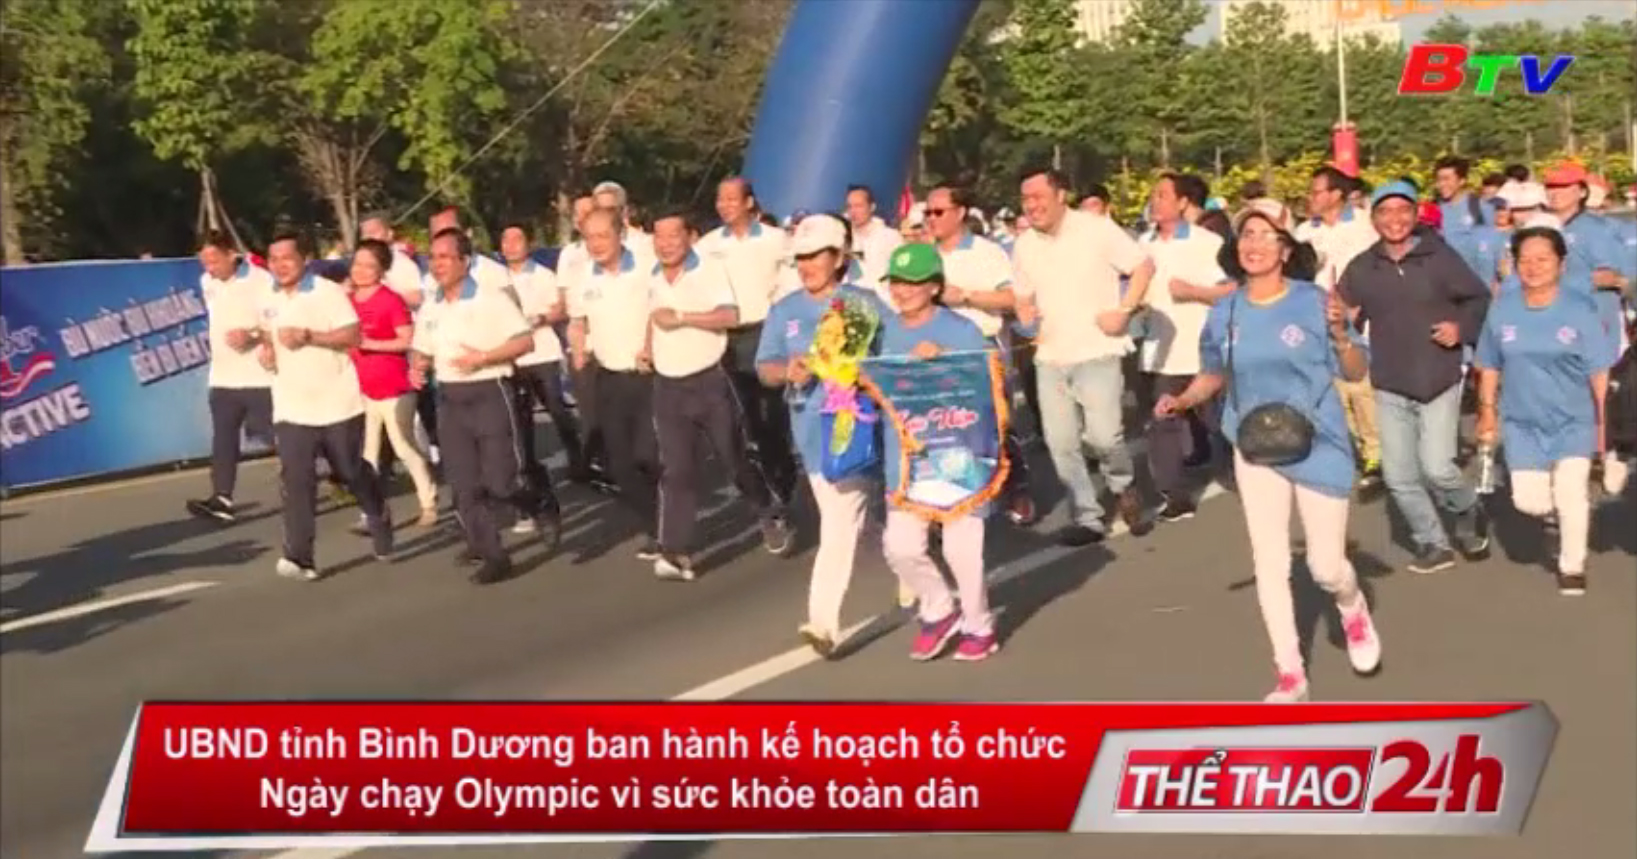 UBND tỉnh Bình Dương ban hành kế hoạch tổ chức Ngày chạy Olympic vì sức khỏe toàn dân